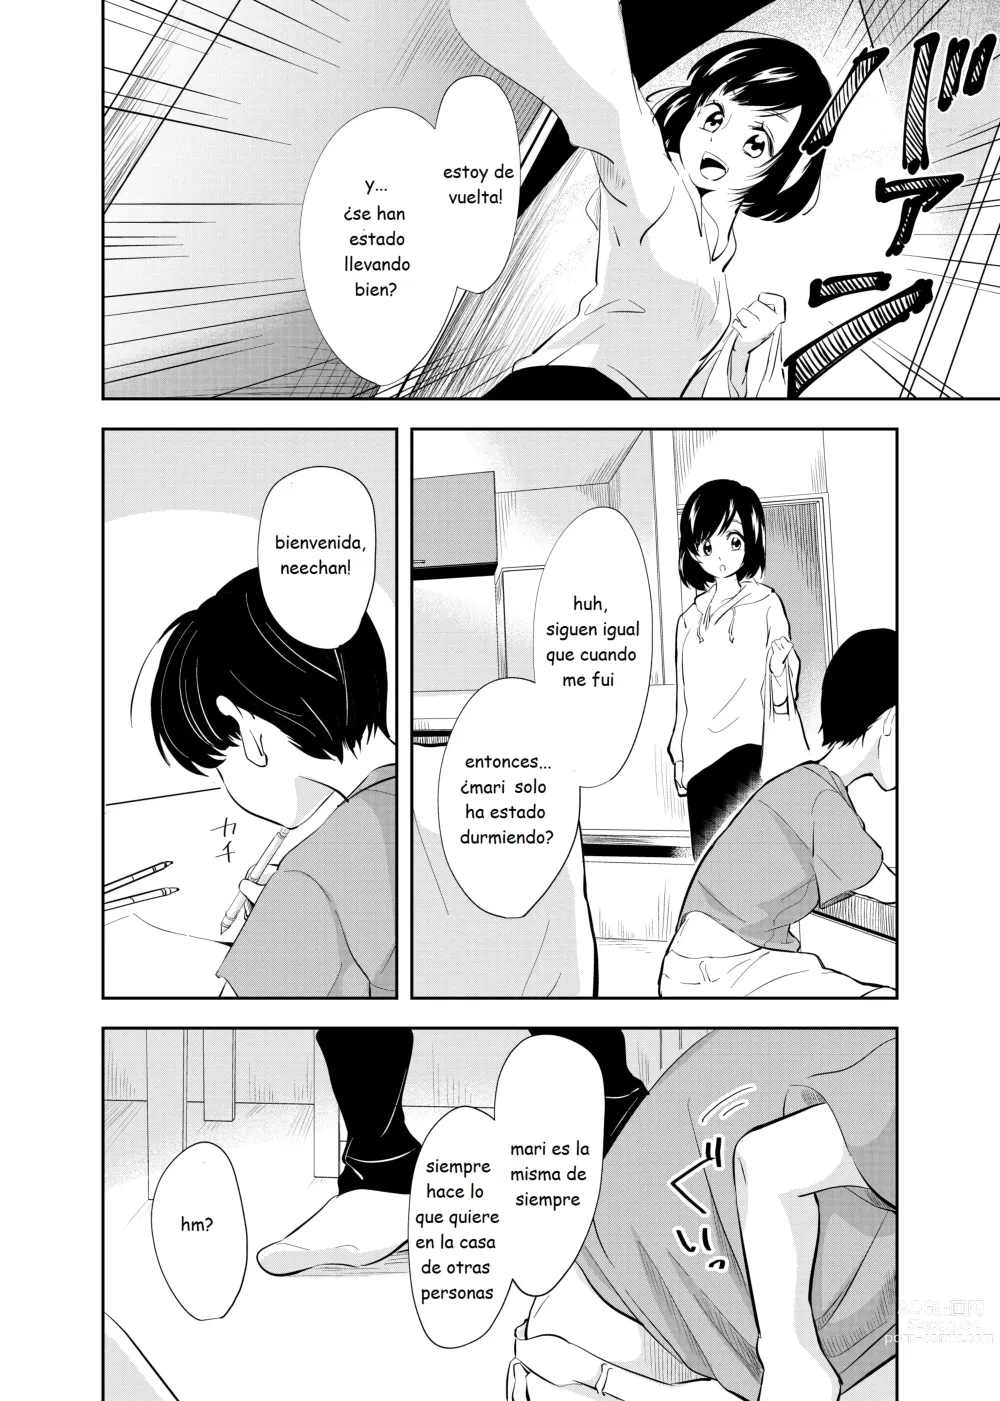 Page 35 of doujinshi Despues de la escuela